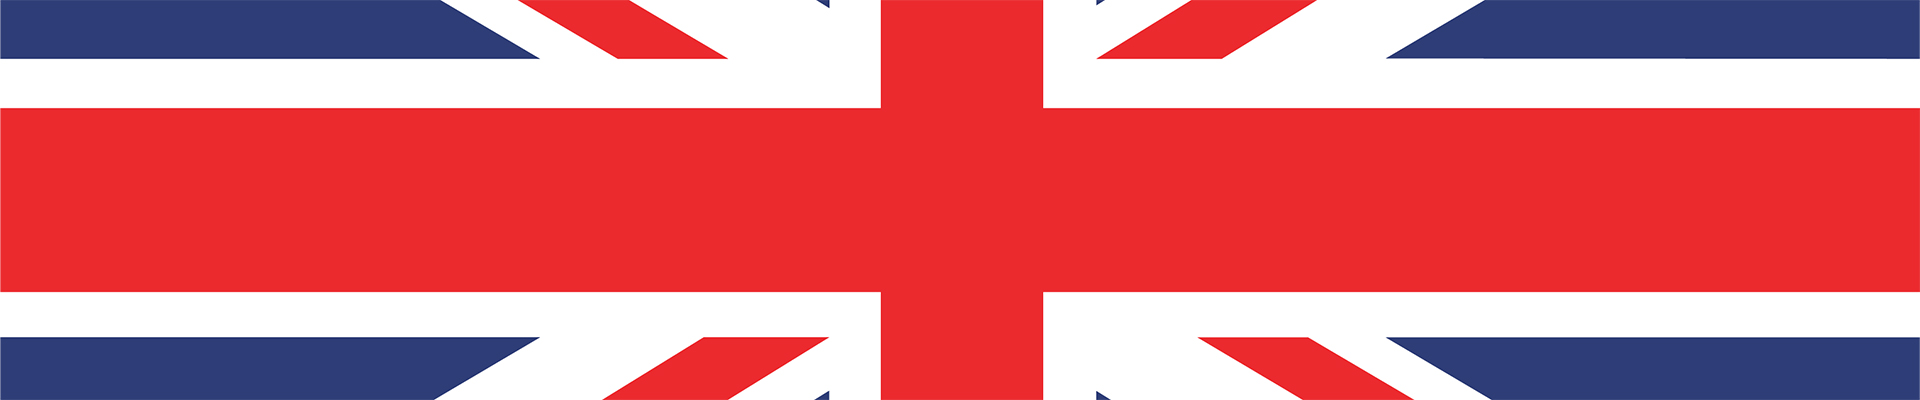 قطعة من العلم البريطاني